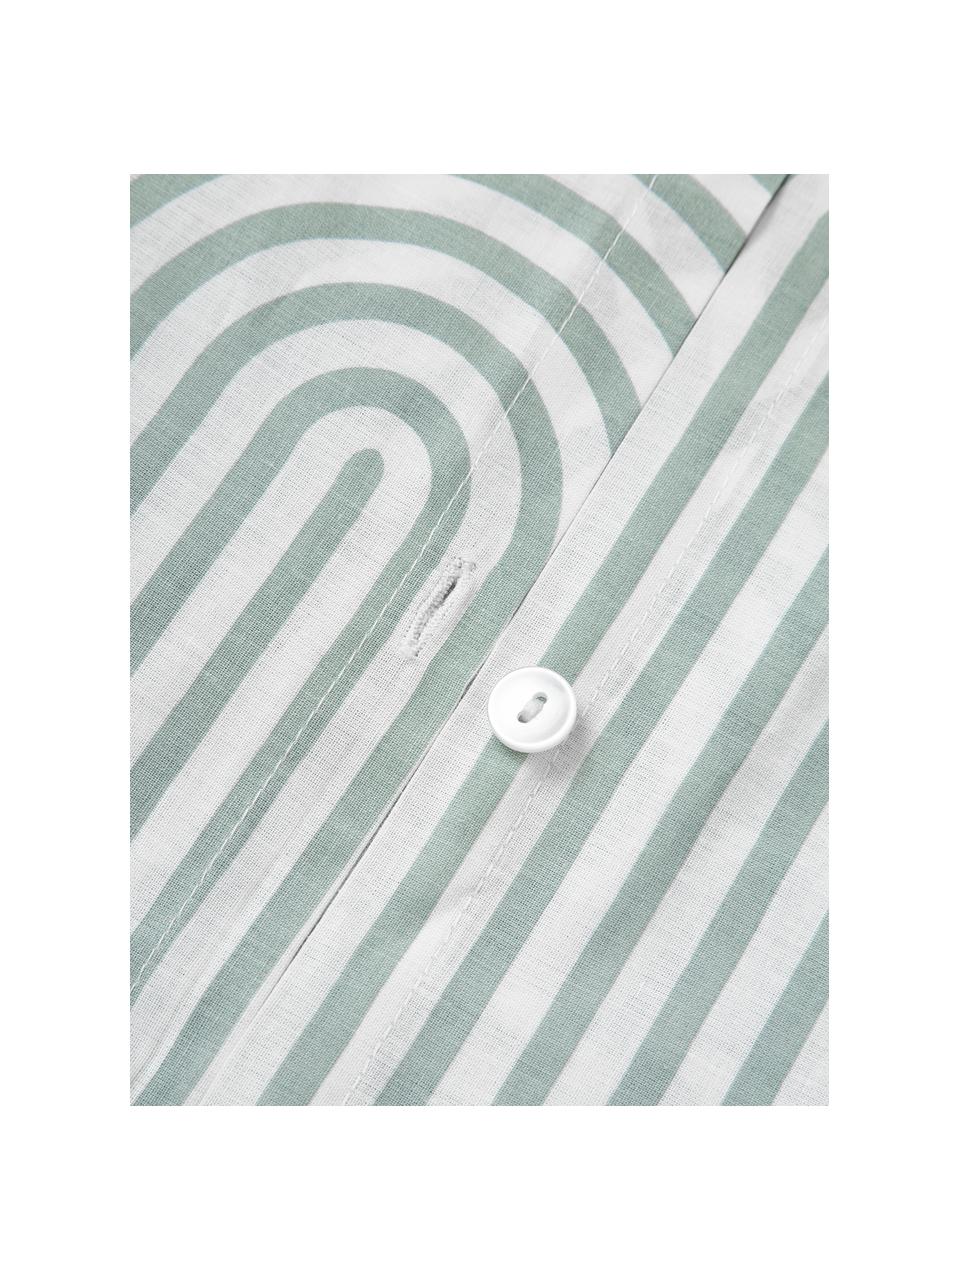 Baumwoll-Bettdeckenbezug Arcs, Webart: Renforcé Fadendichte 144 , Grün, Weiß, B 200 x L 200 cm